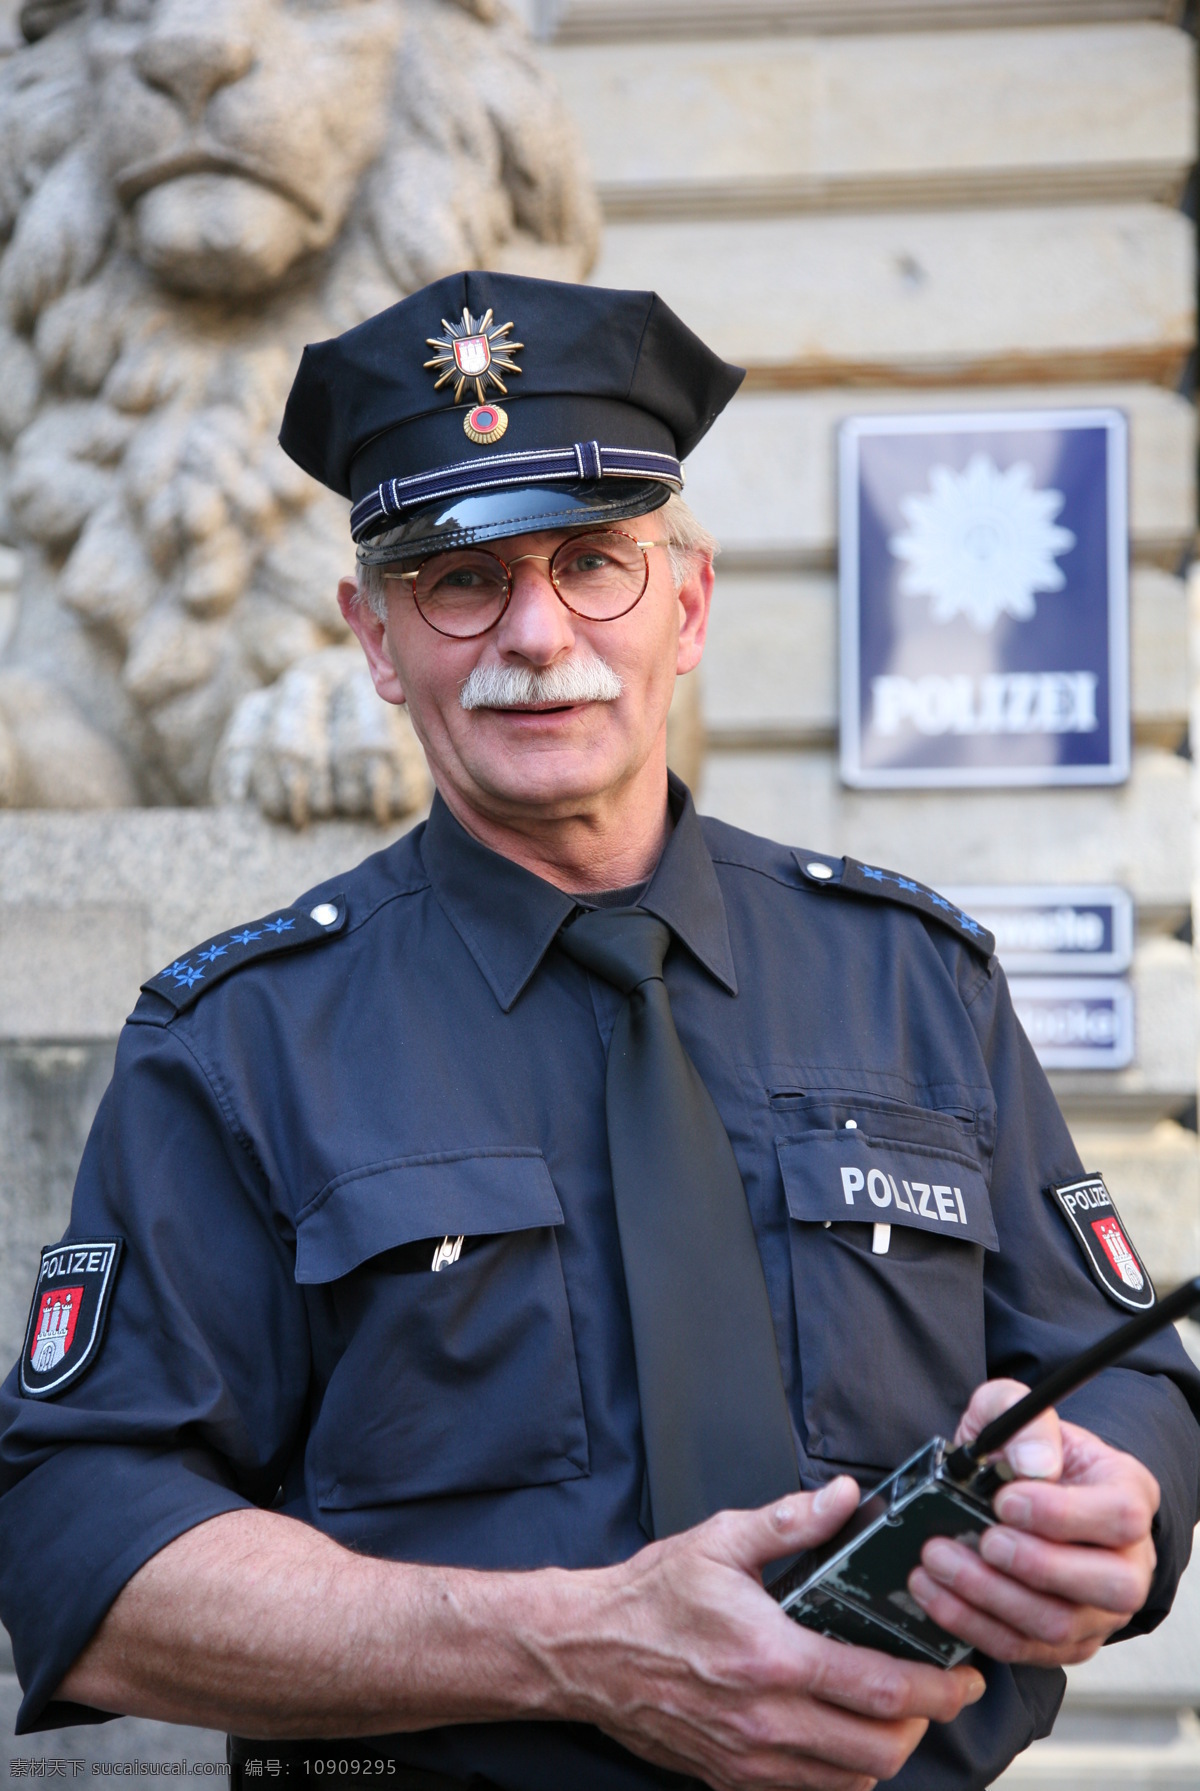 警察 制服 汉堡 蓝色 新警服 职业人物 人物图库